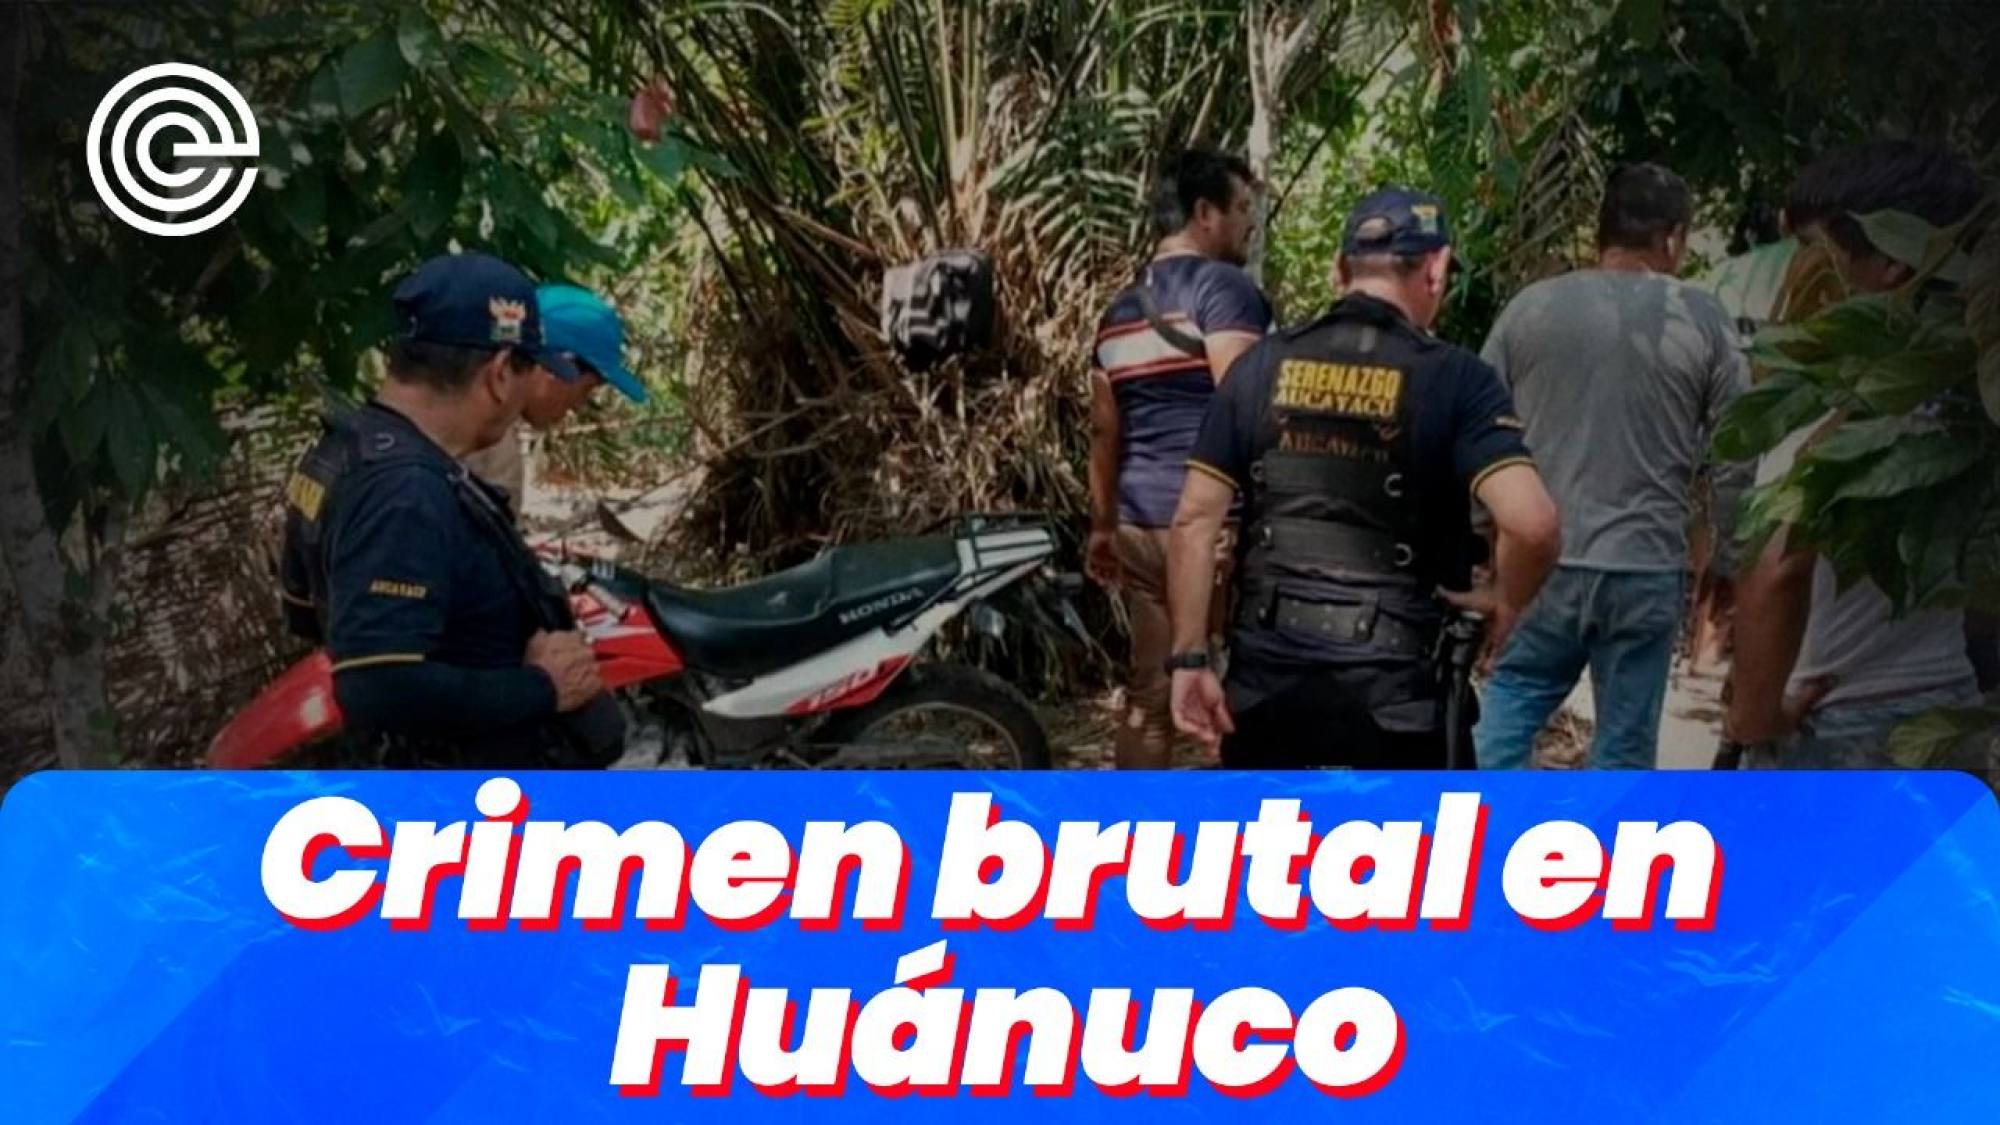 Crimen brutal en Huánuco | Golpe a la Educación en stand by | Golpe a la JNJ a la vista, Epicentro TV